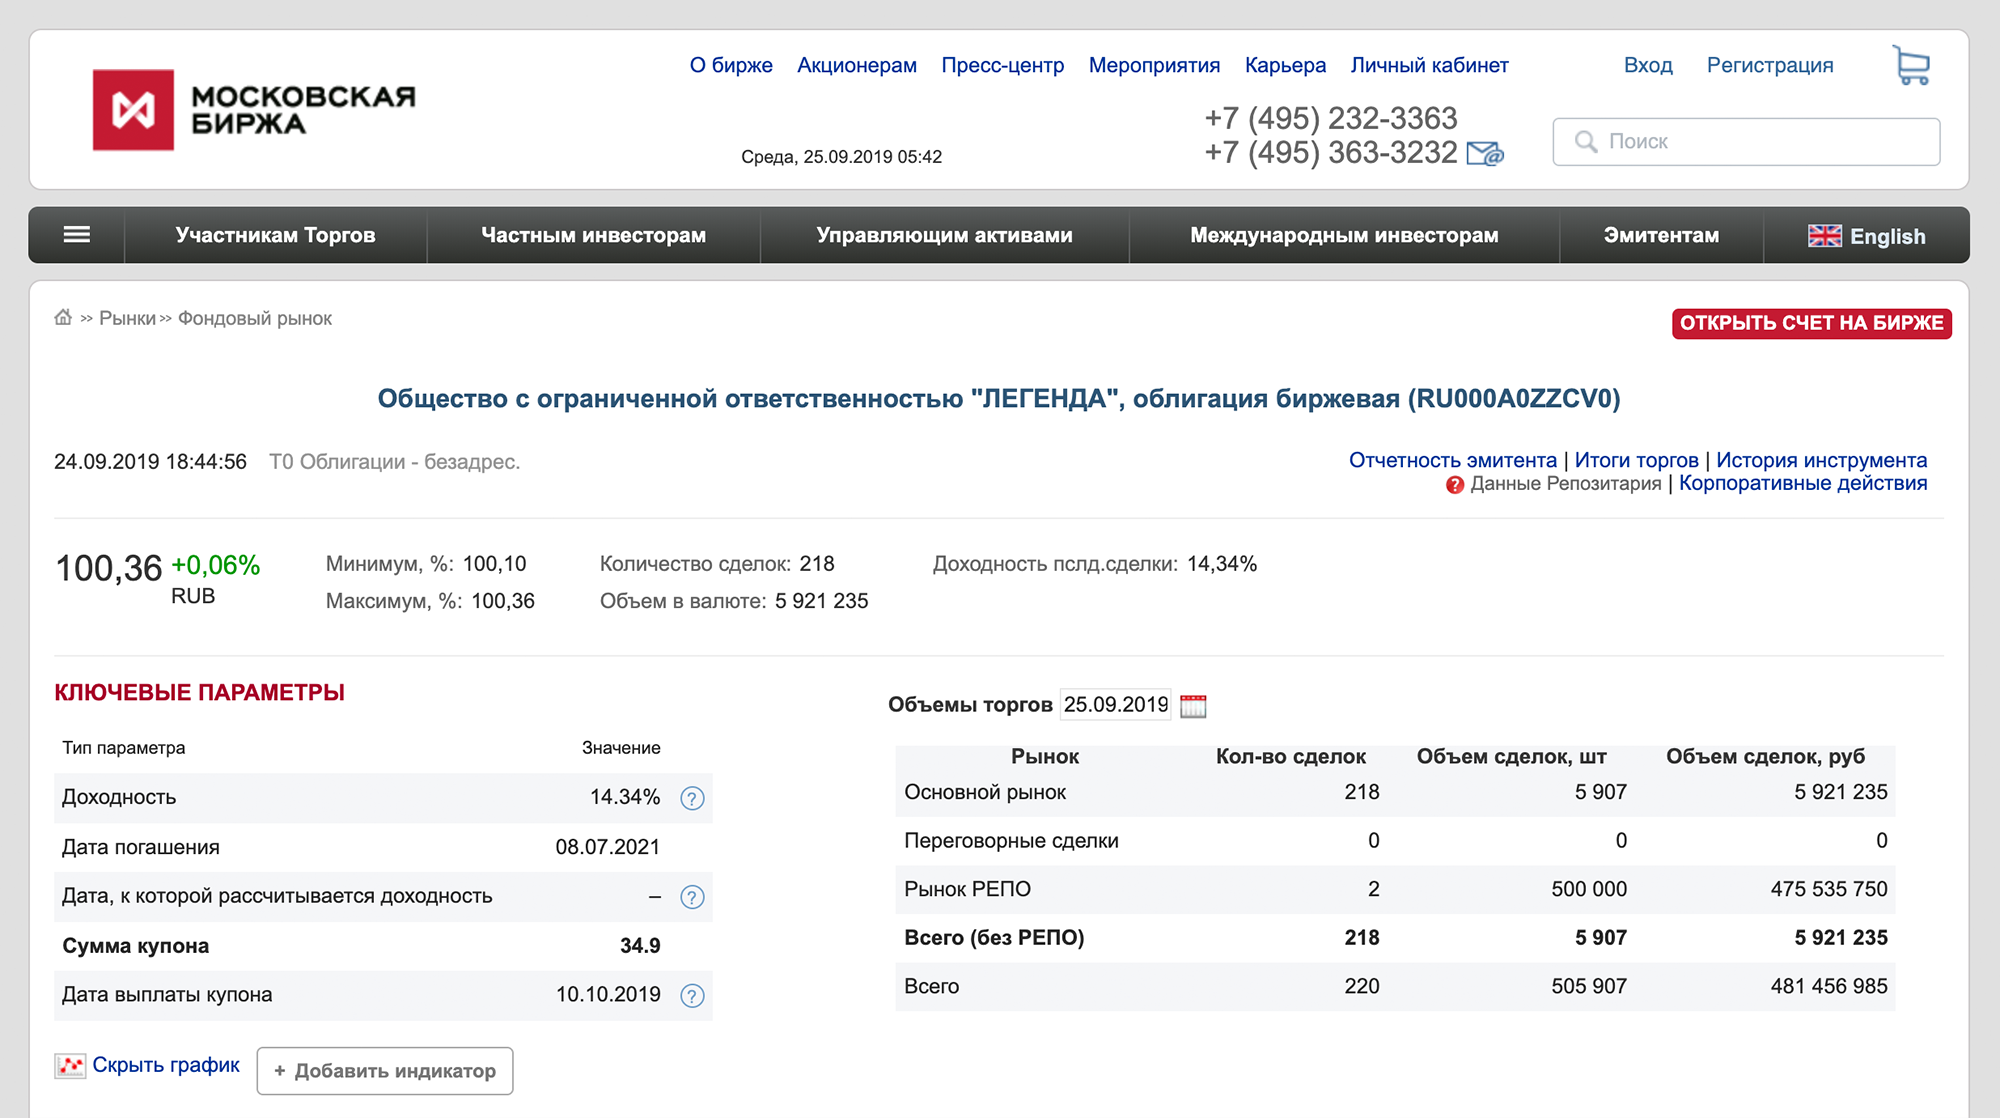 Параметры облигации «Легенда 1P1» на сайте Московской биржи